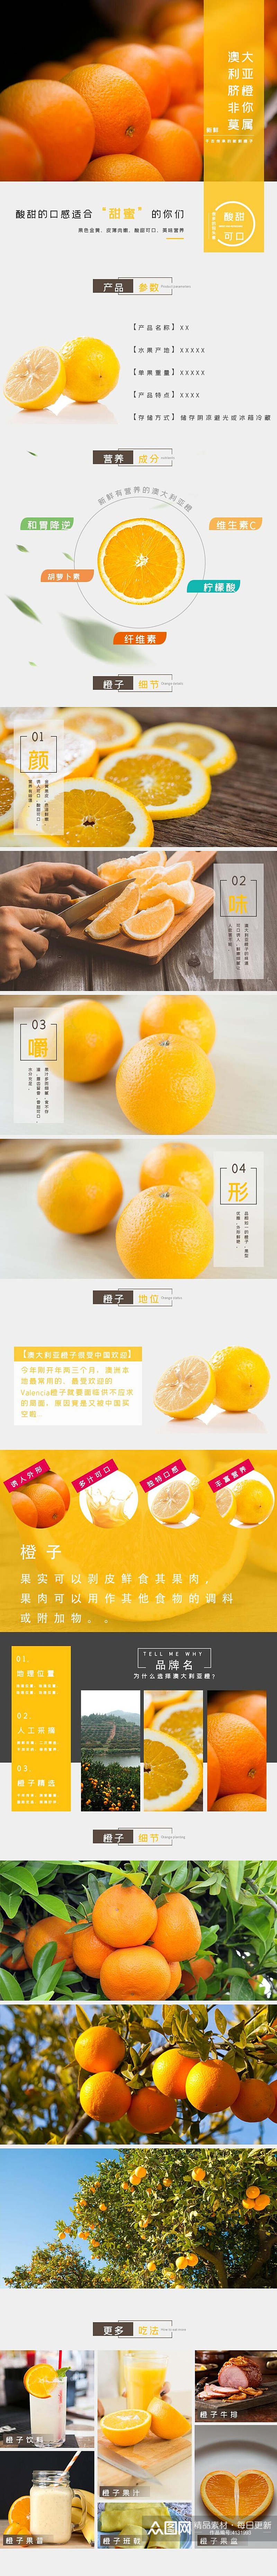 橙子水果详情页素材